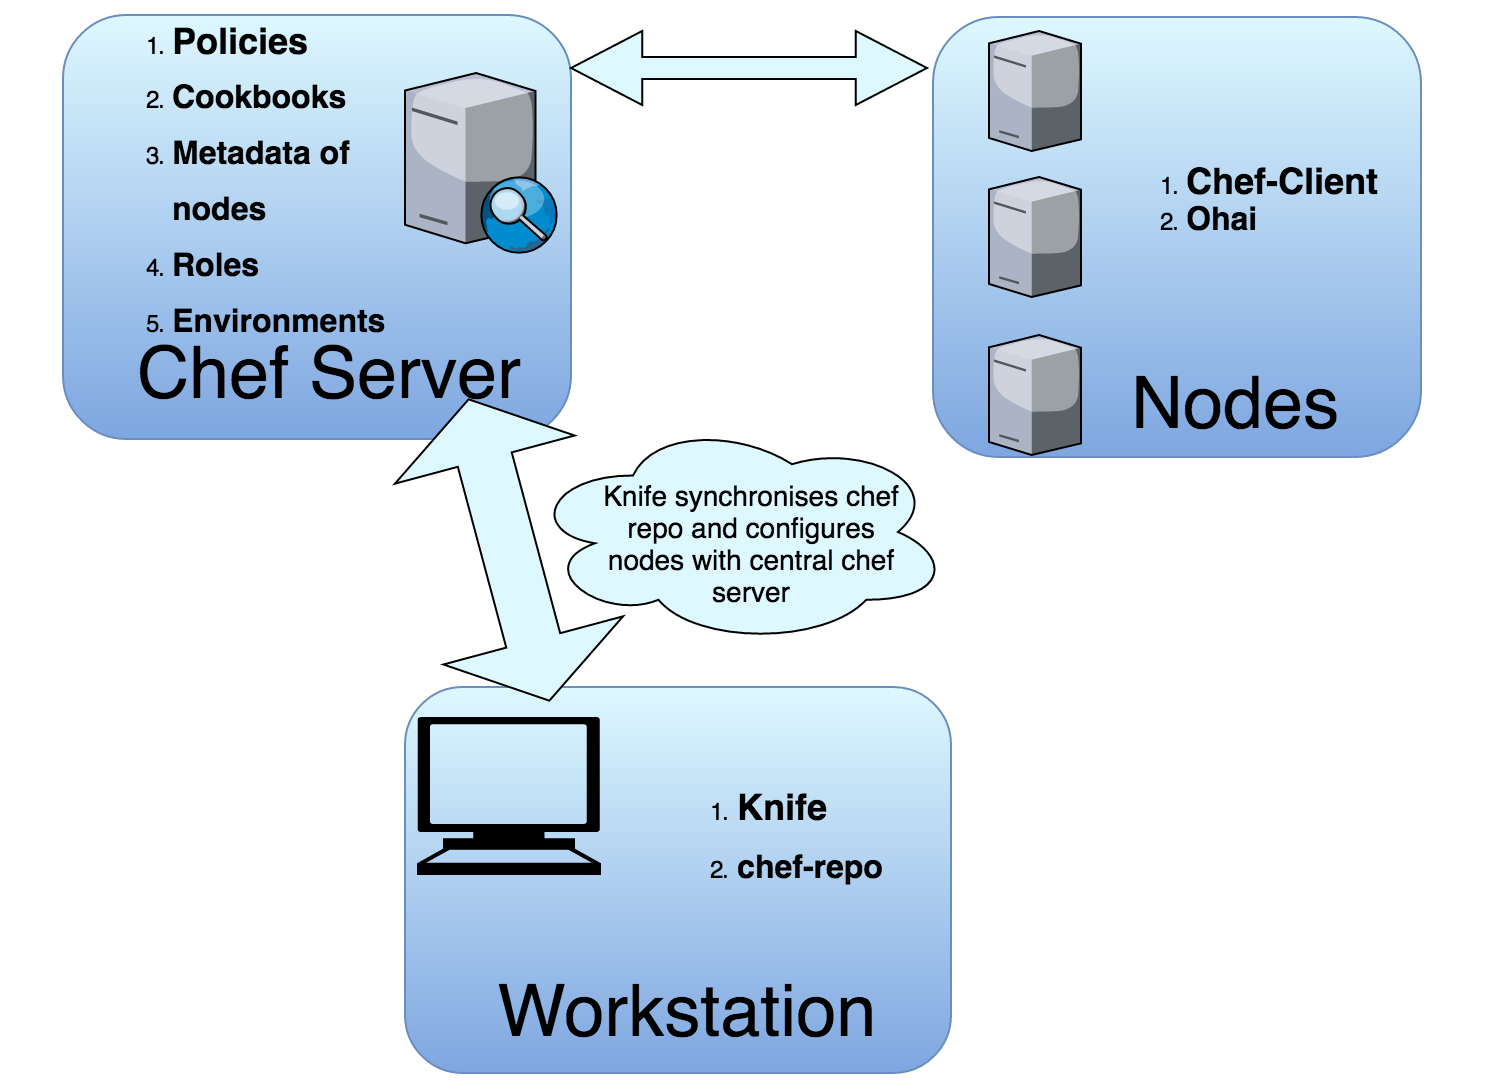 Chef Server, workstation, and nodes